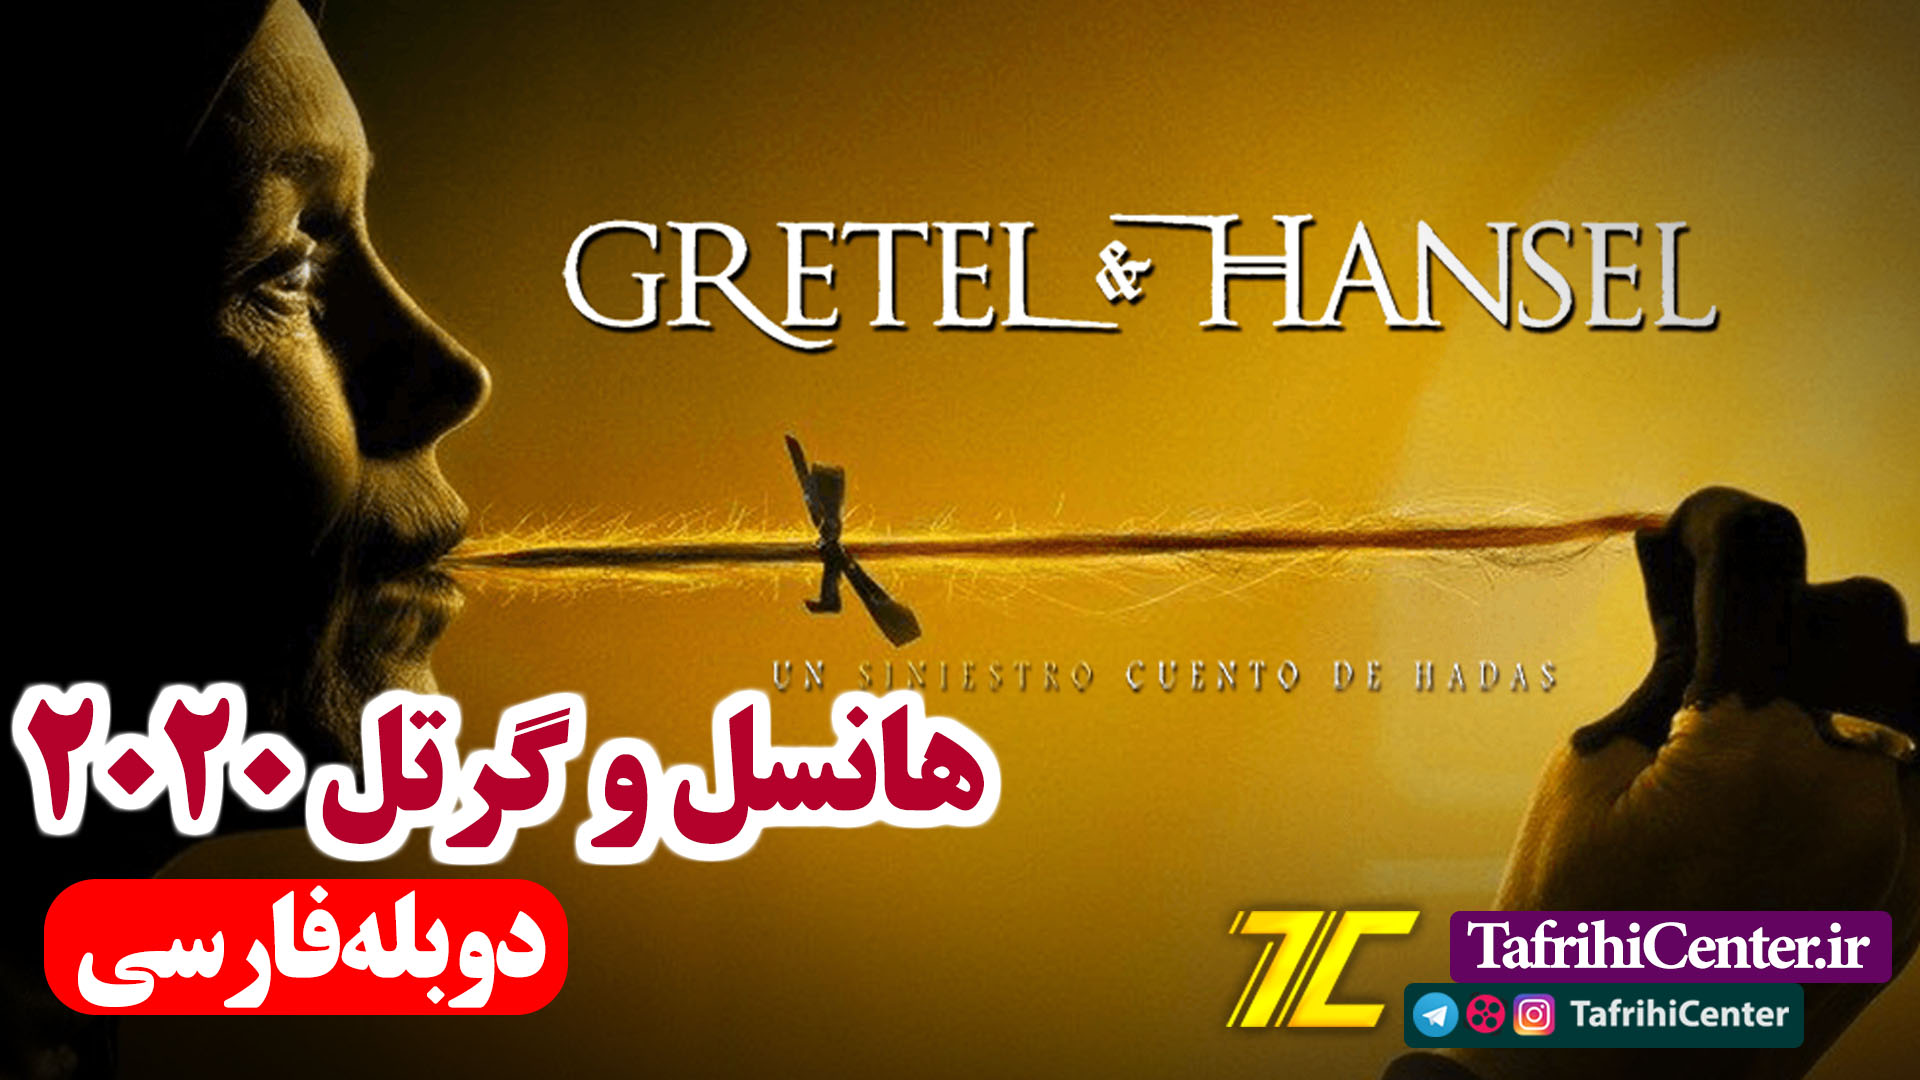 فیلم گرتل و هانسل 2020 با دوبله فارسی | Gretel & Hansel 2020